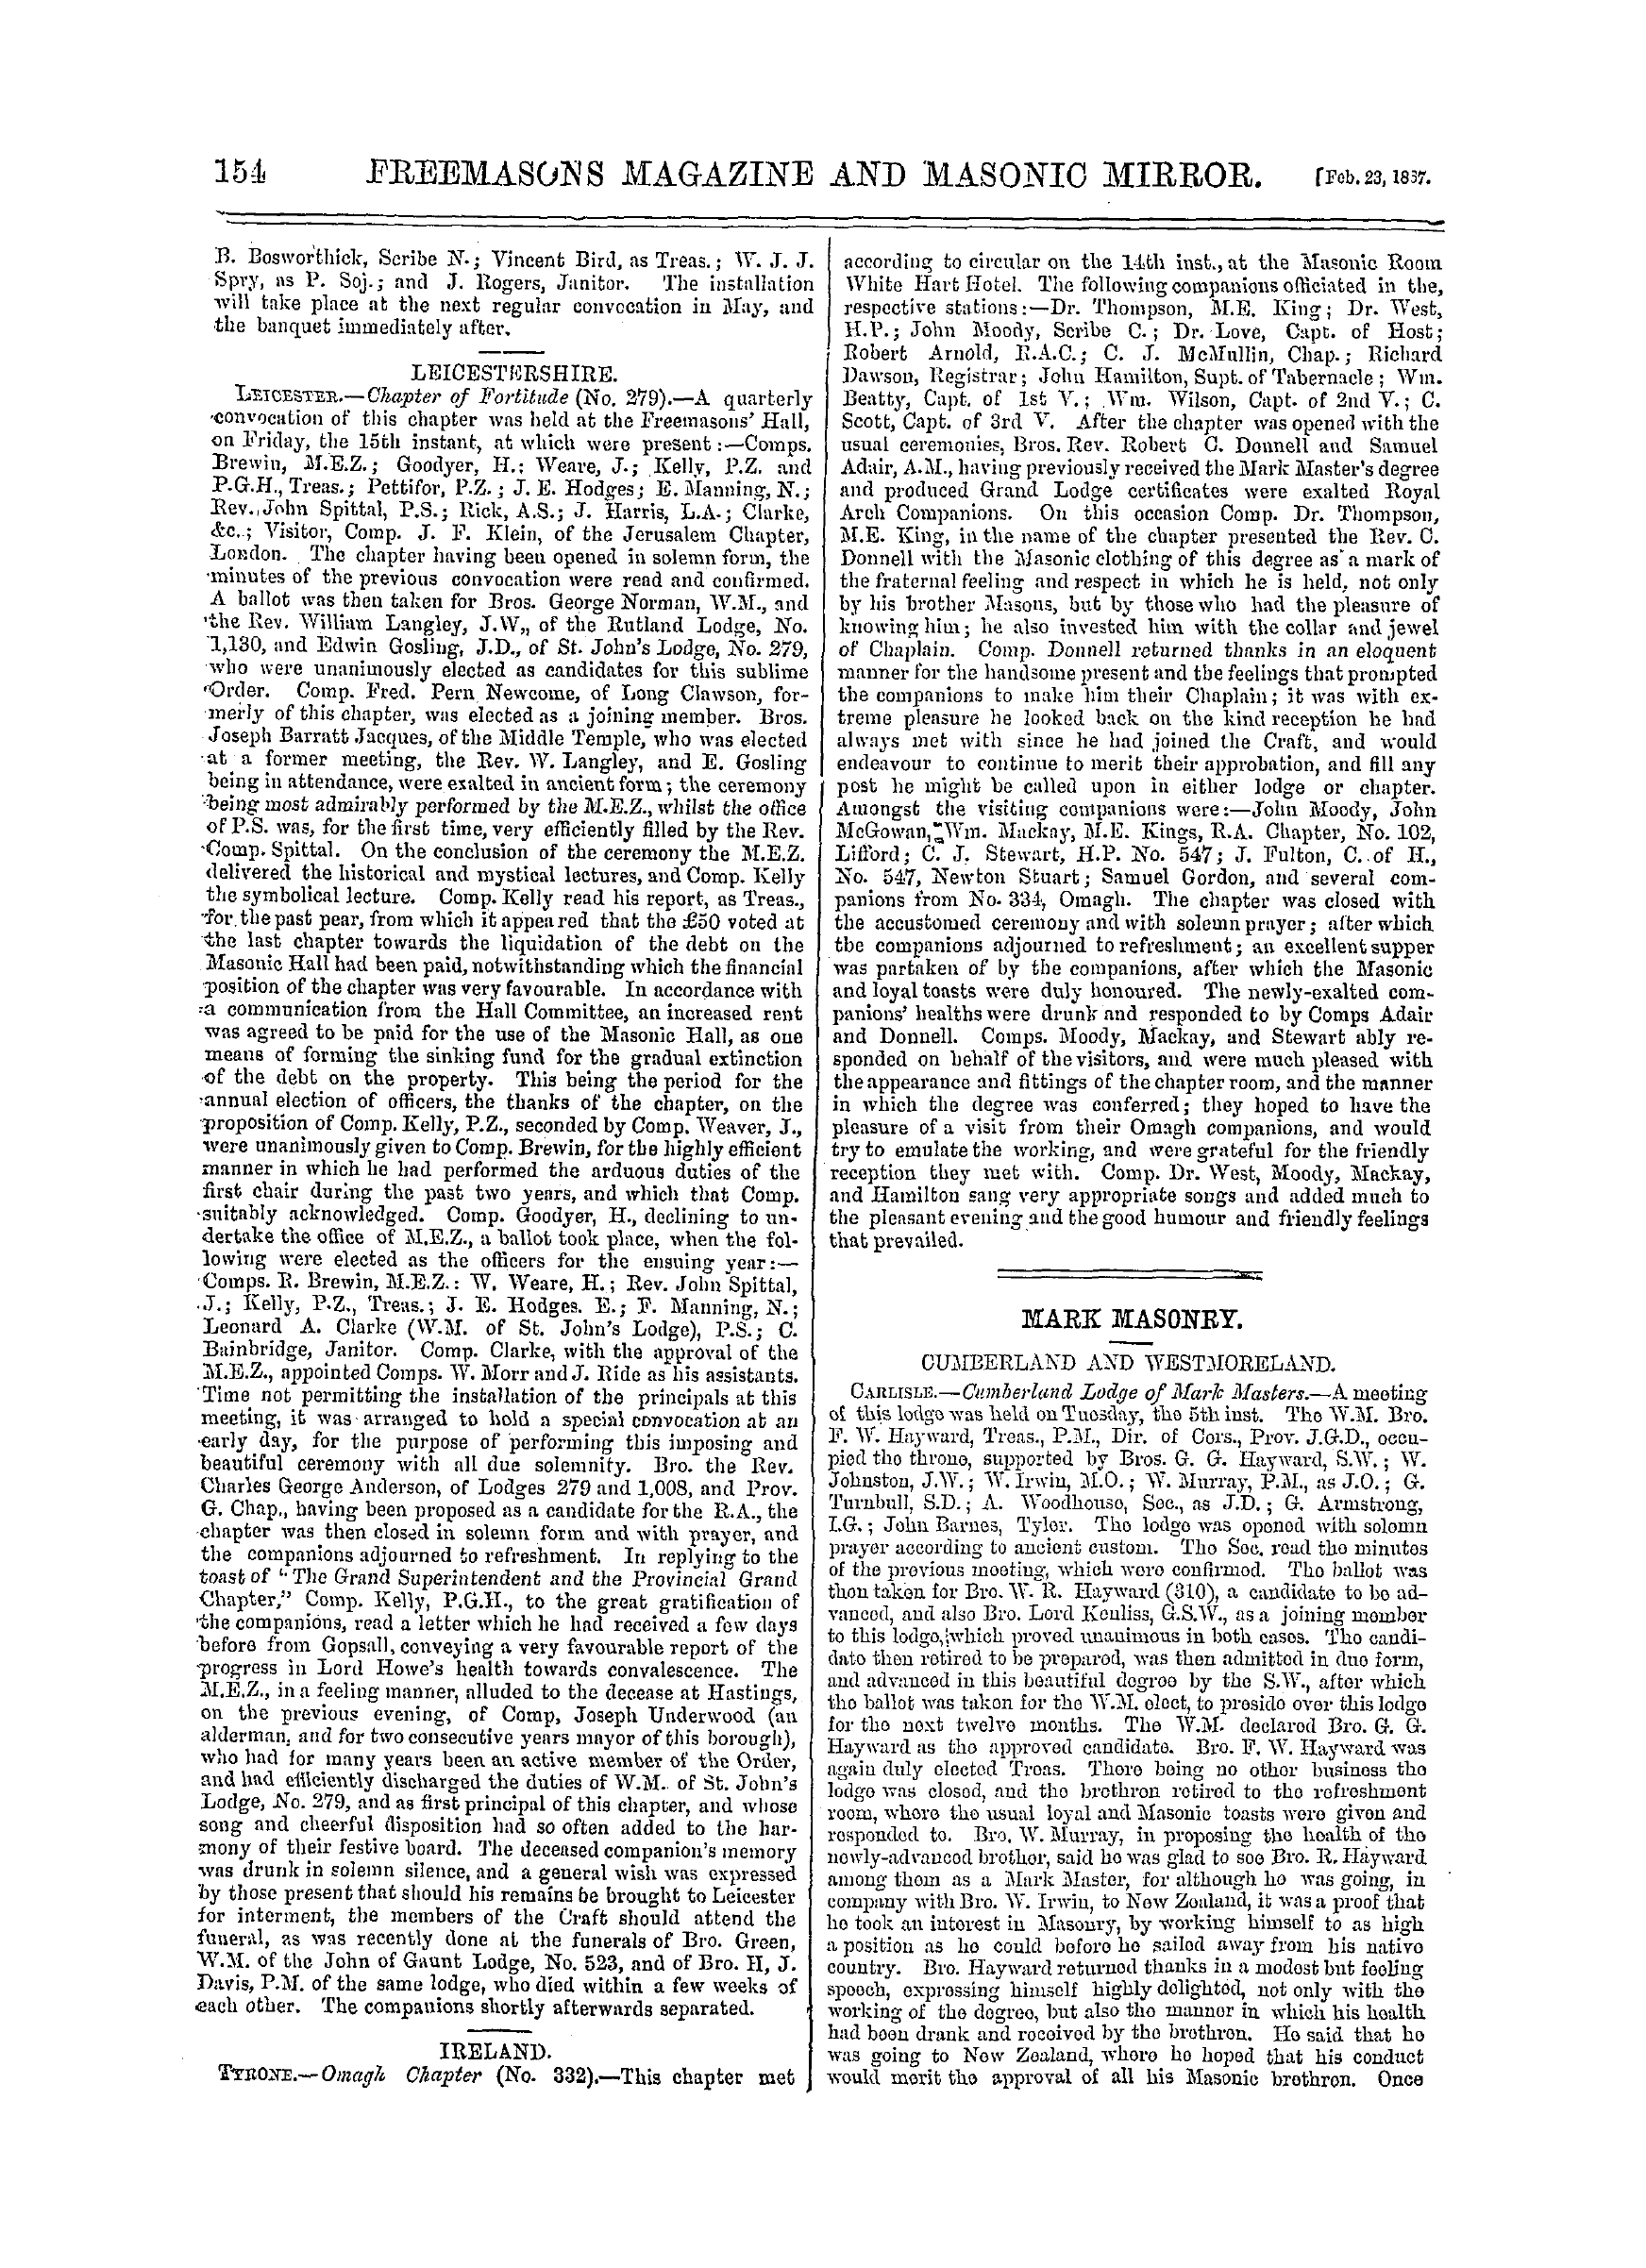 The Freemasons' Monthly Magazine: 1867-02-23 - Mark Masonry.